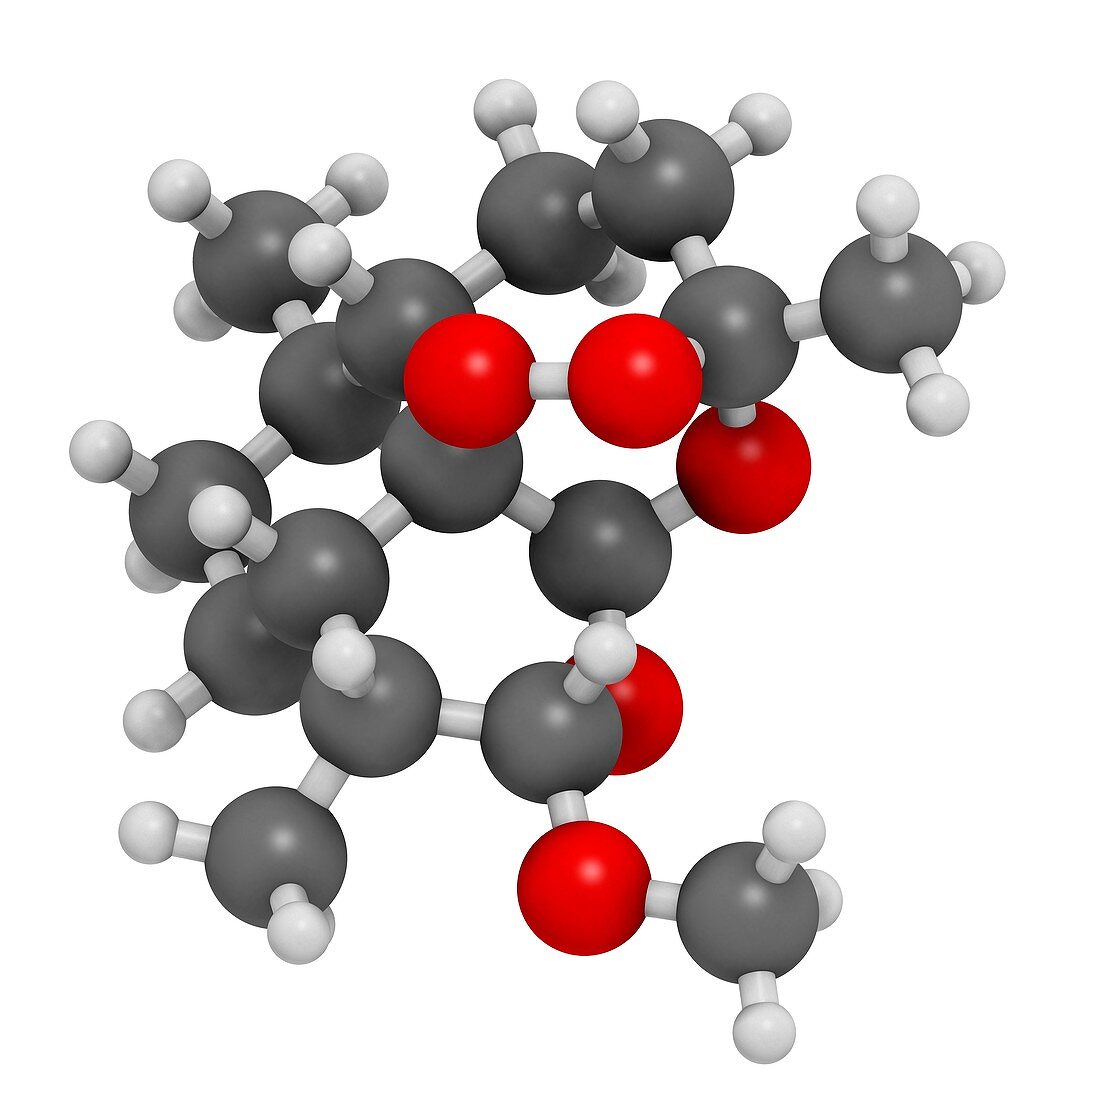 Artemether malaria drug molecule